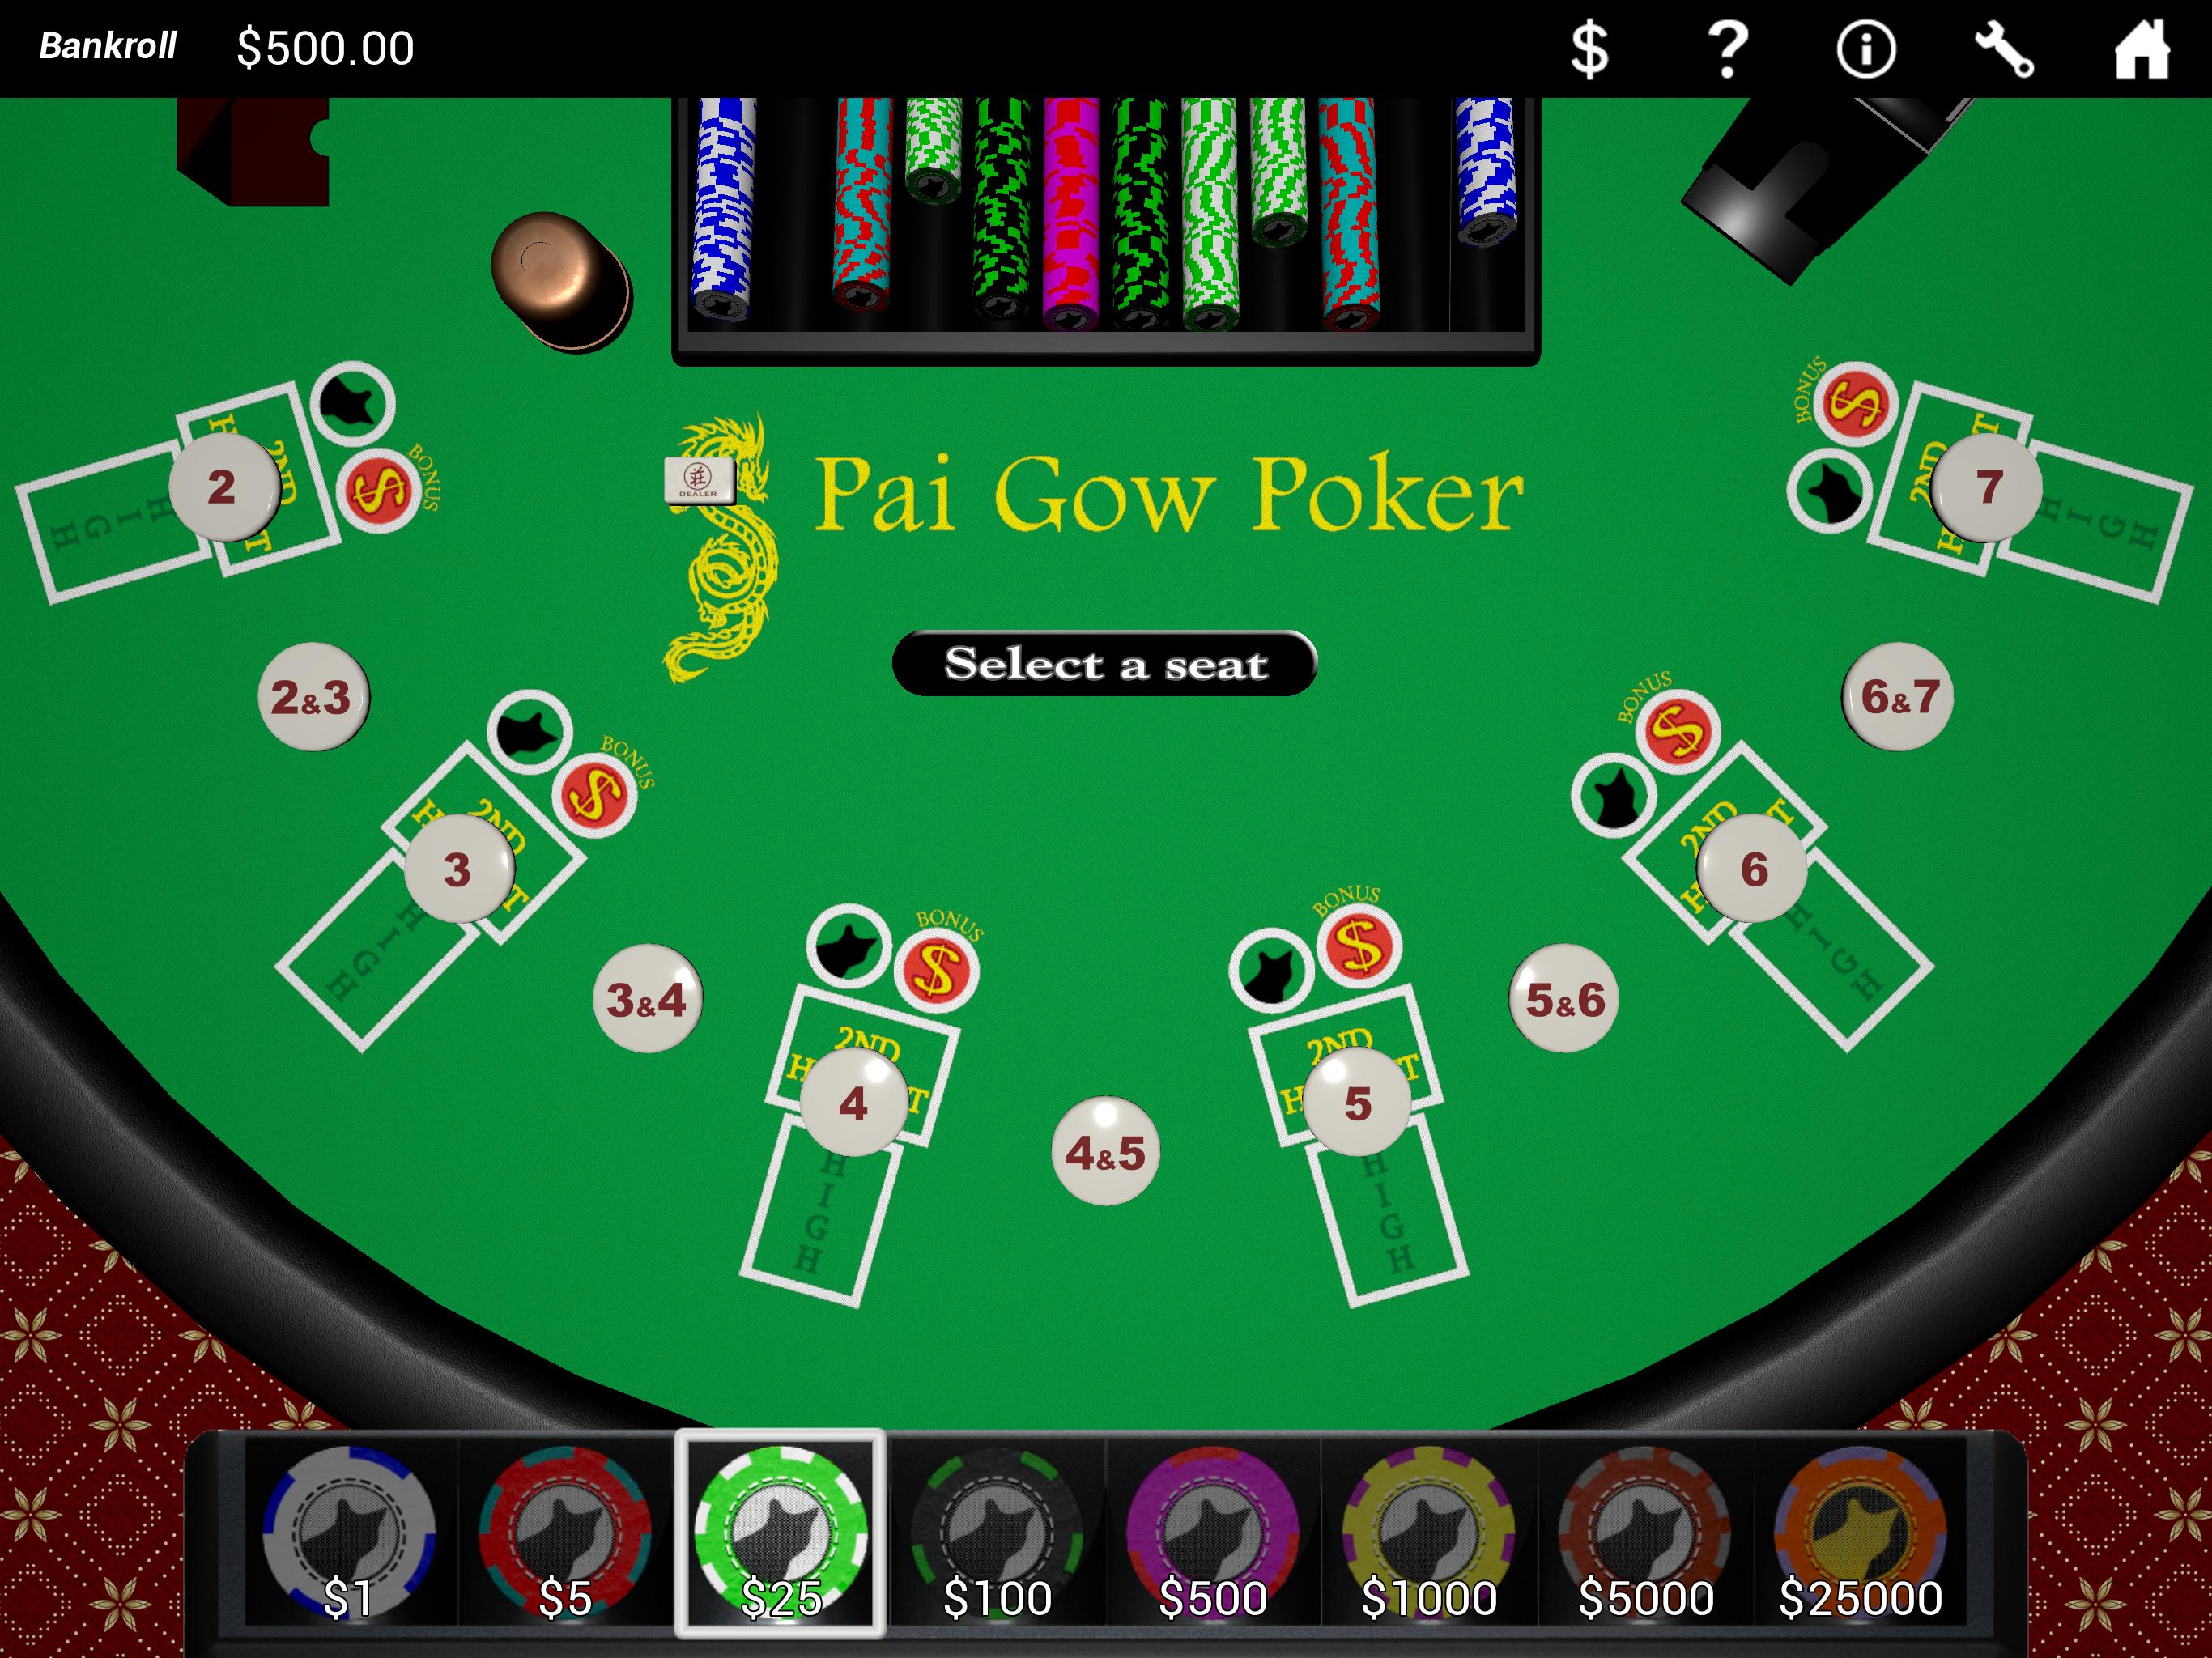 Пай гау покер вону казино играх блекджек расчёт принимается половина игры в карты черви как играть